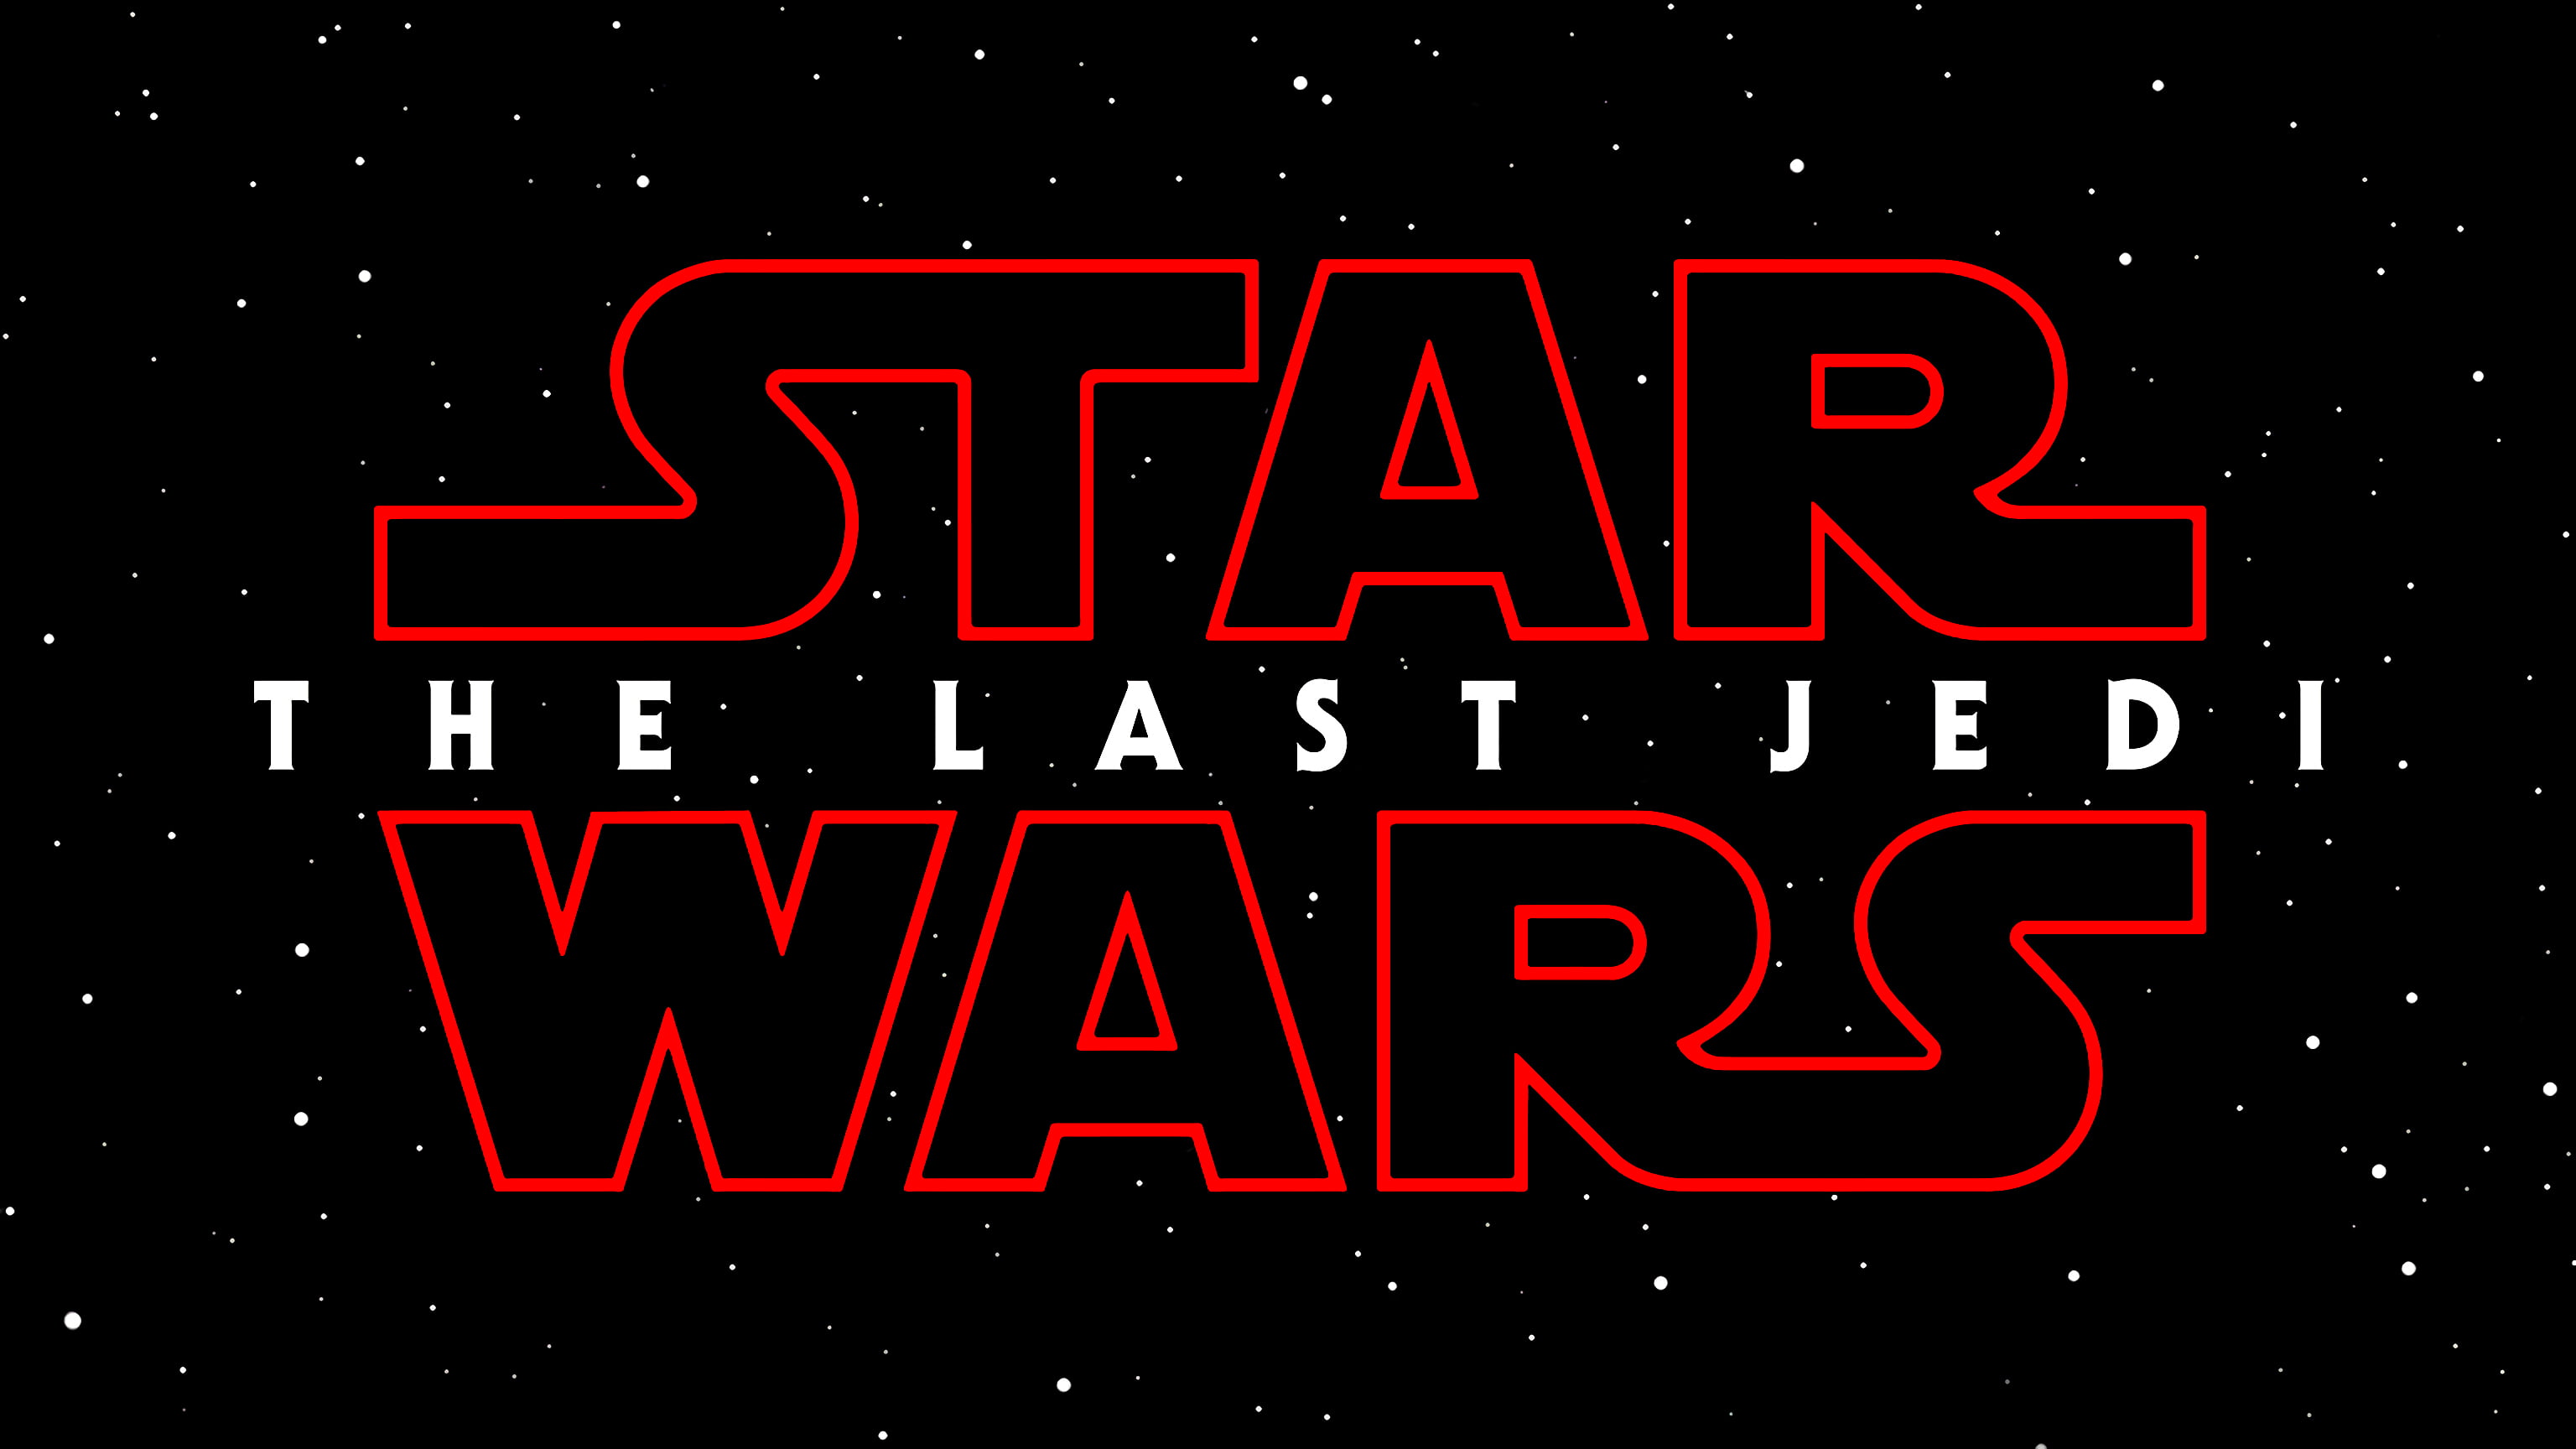 Star Wars The Last Jedi digital wallpaper, Star Wars, Star Wars: The Last Jedi, typography